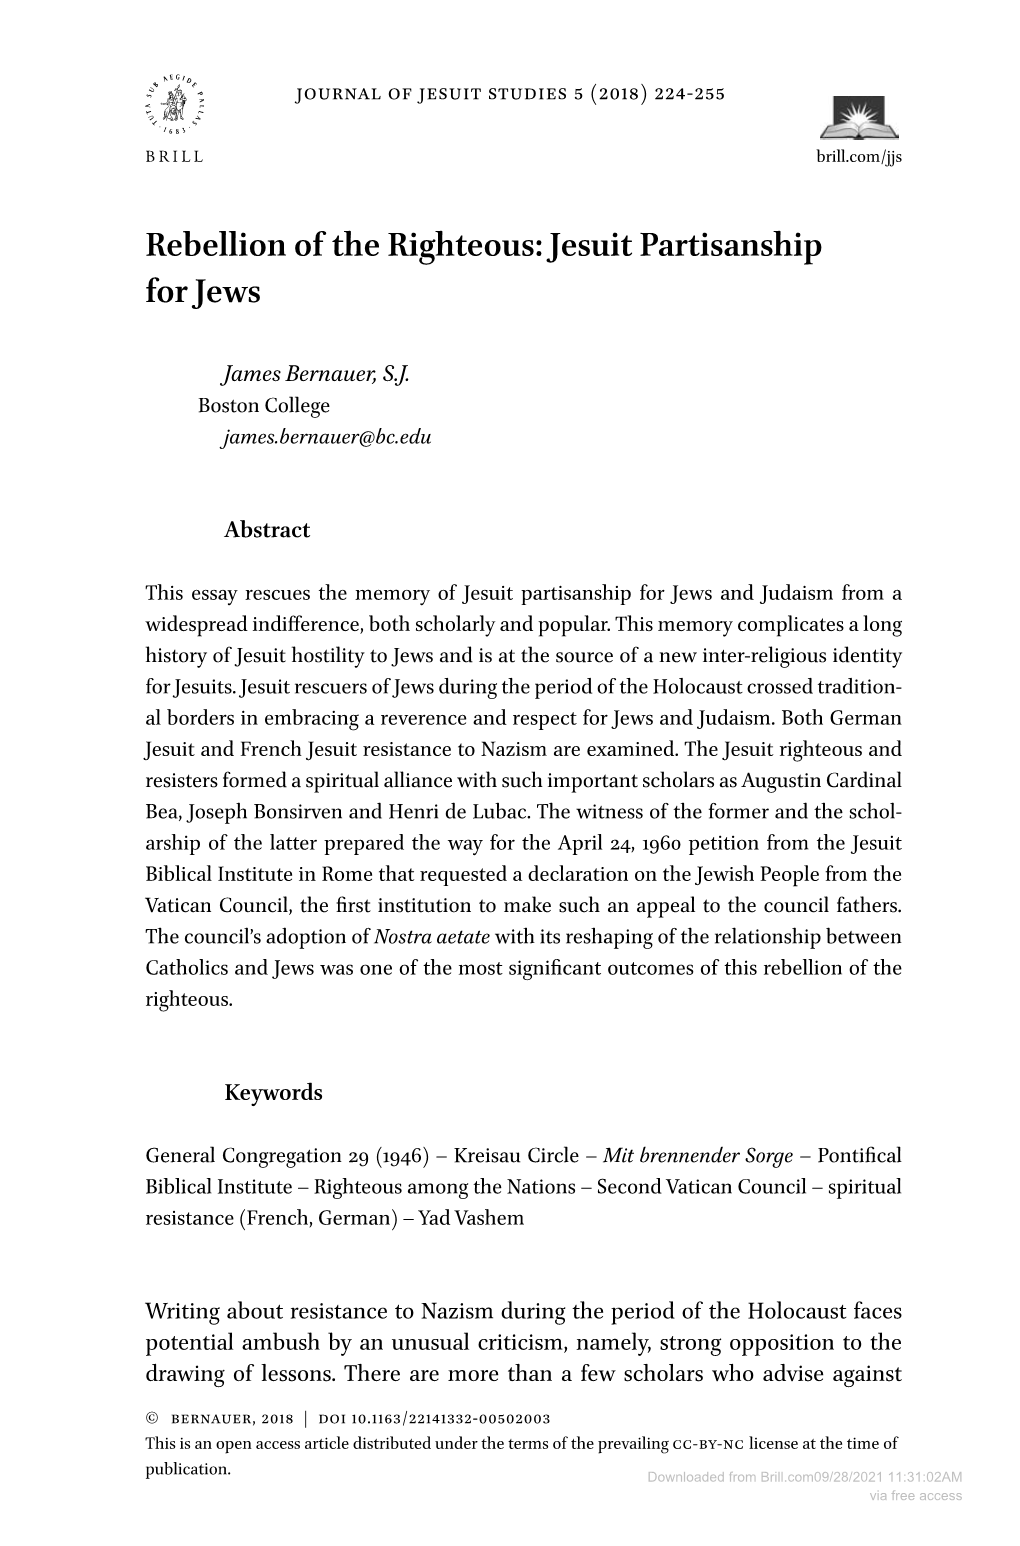 Jesuit Partisanship for Jews